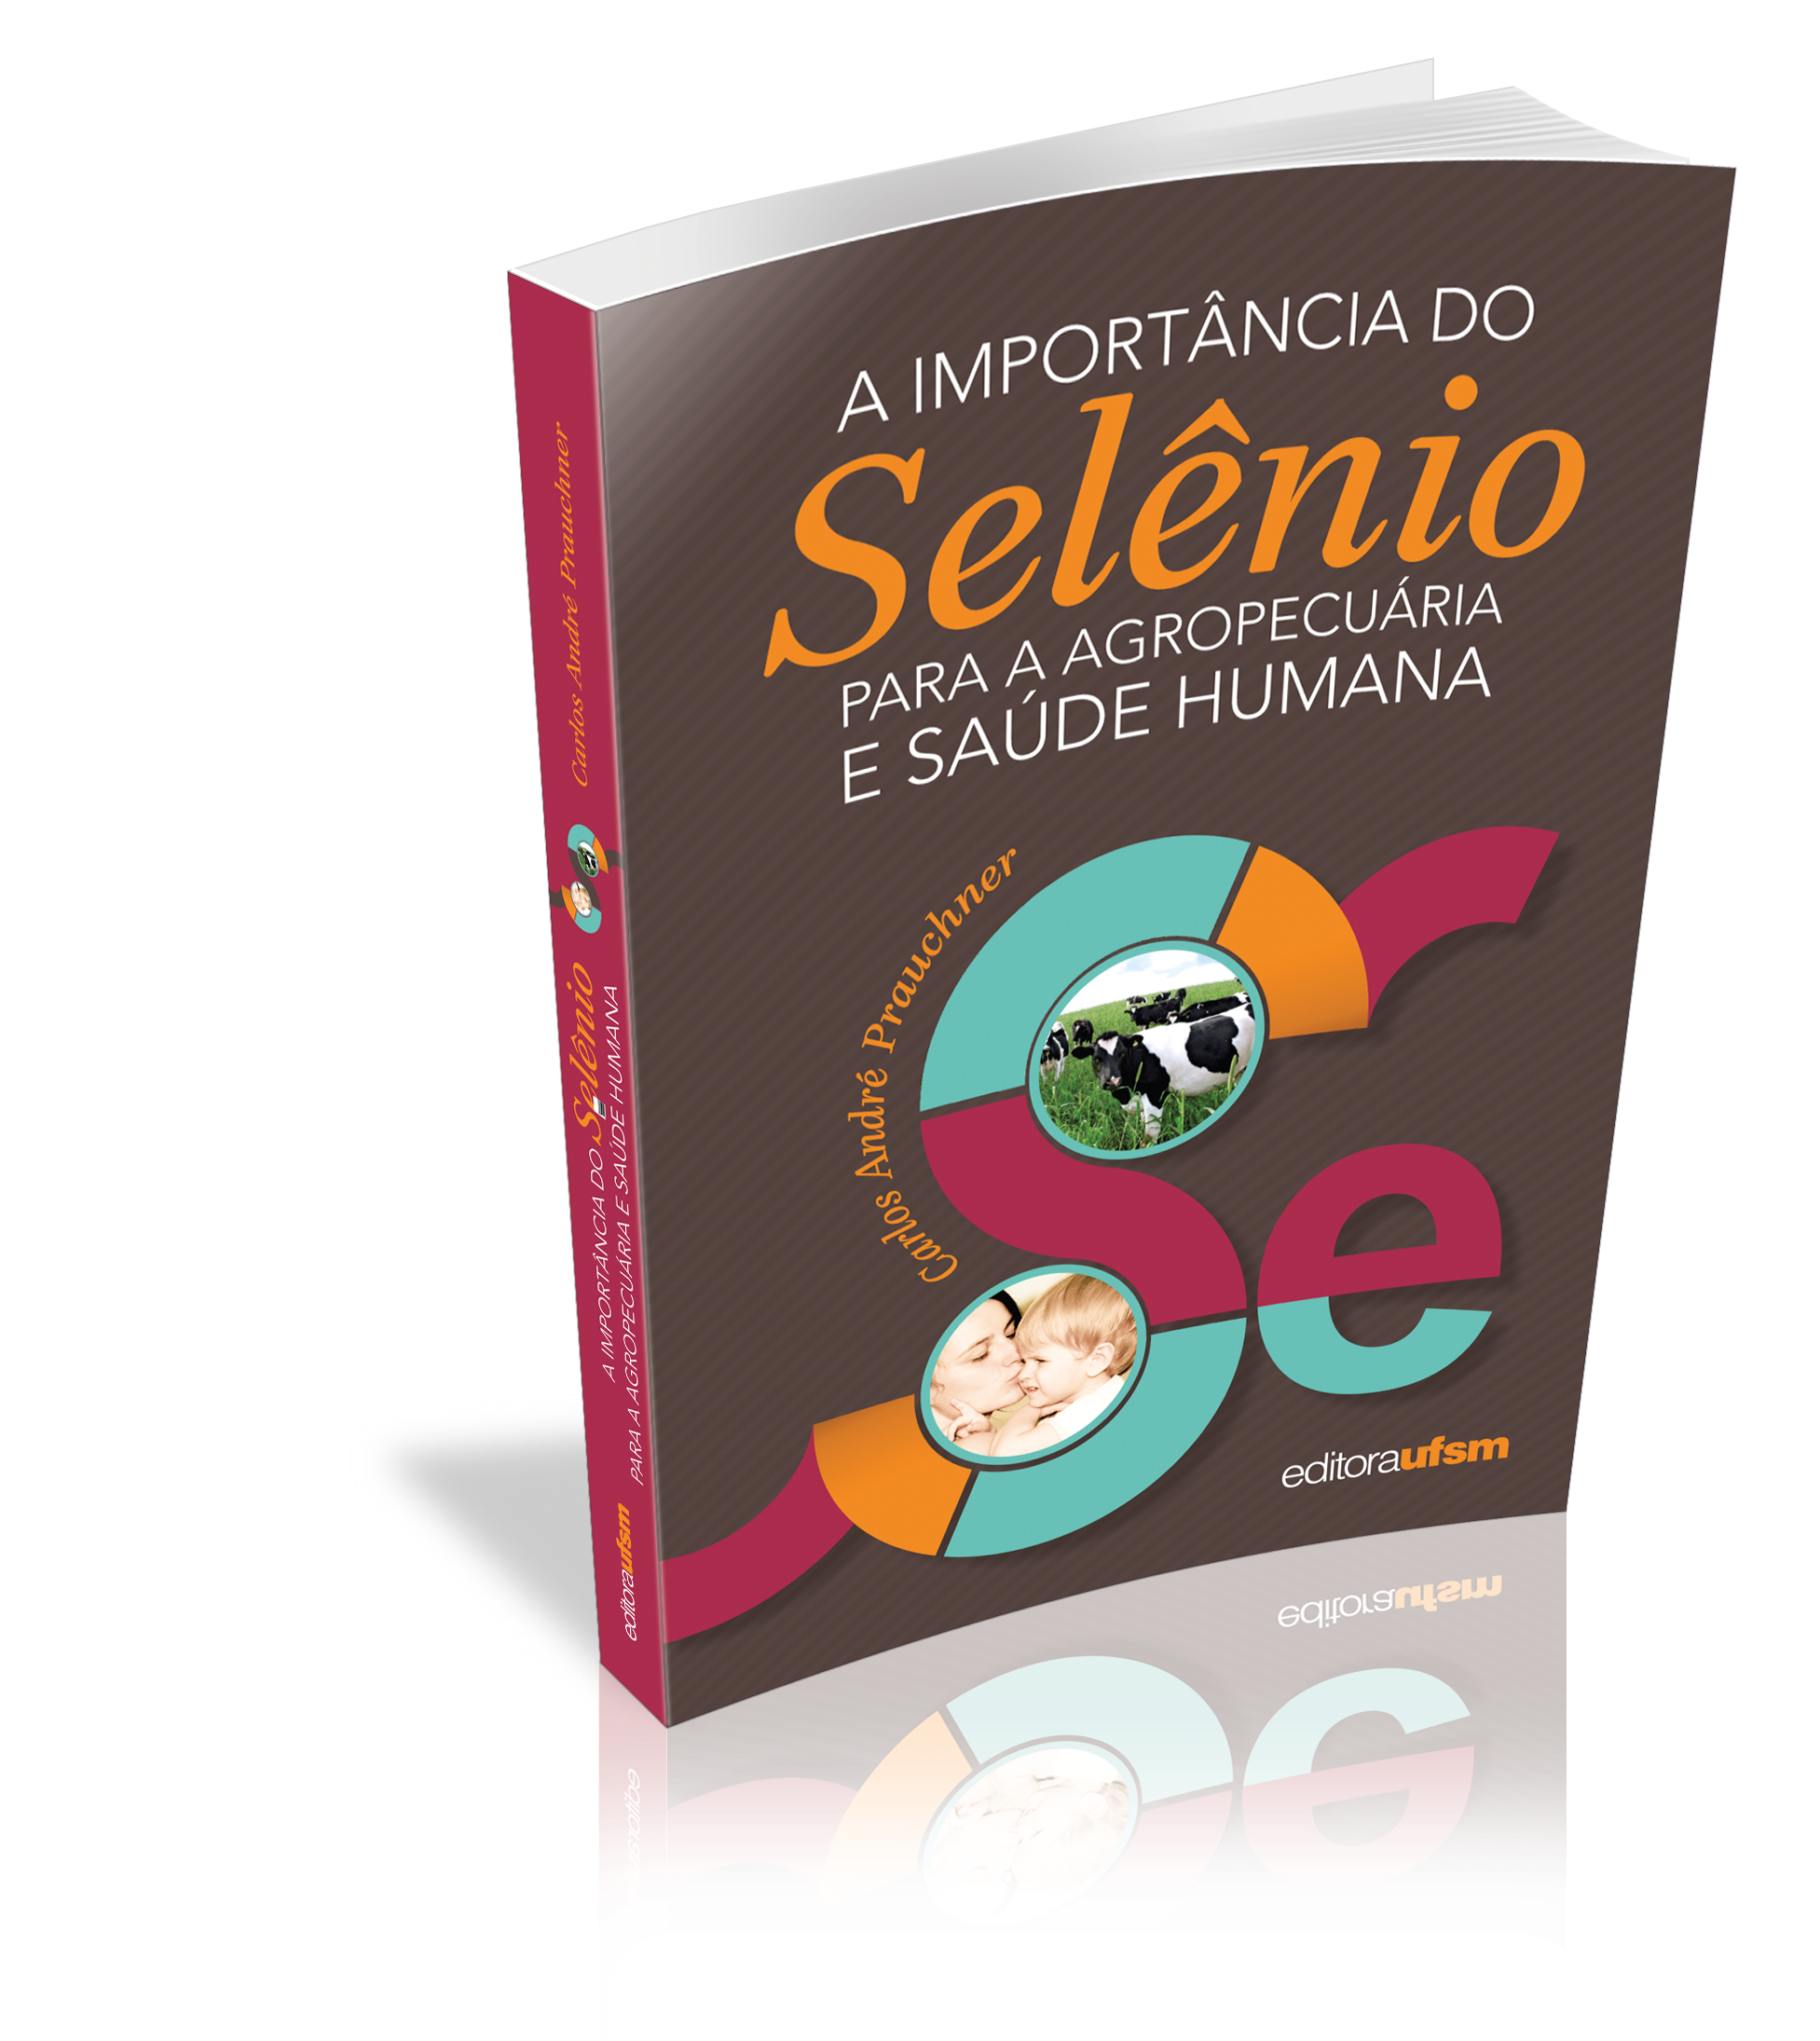 Capa do livro A importância do selênio para a agropecuária e saúde humana